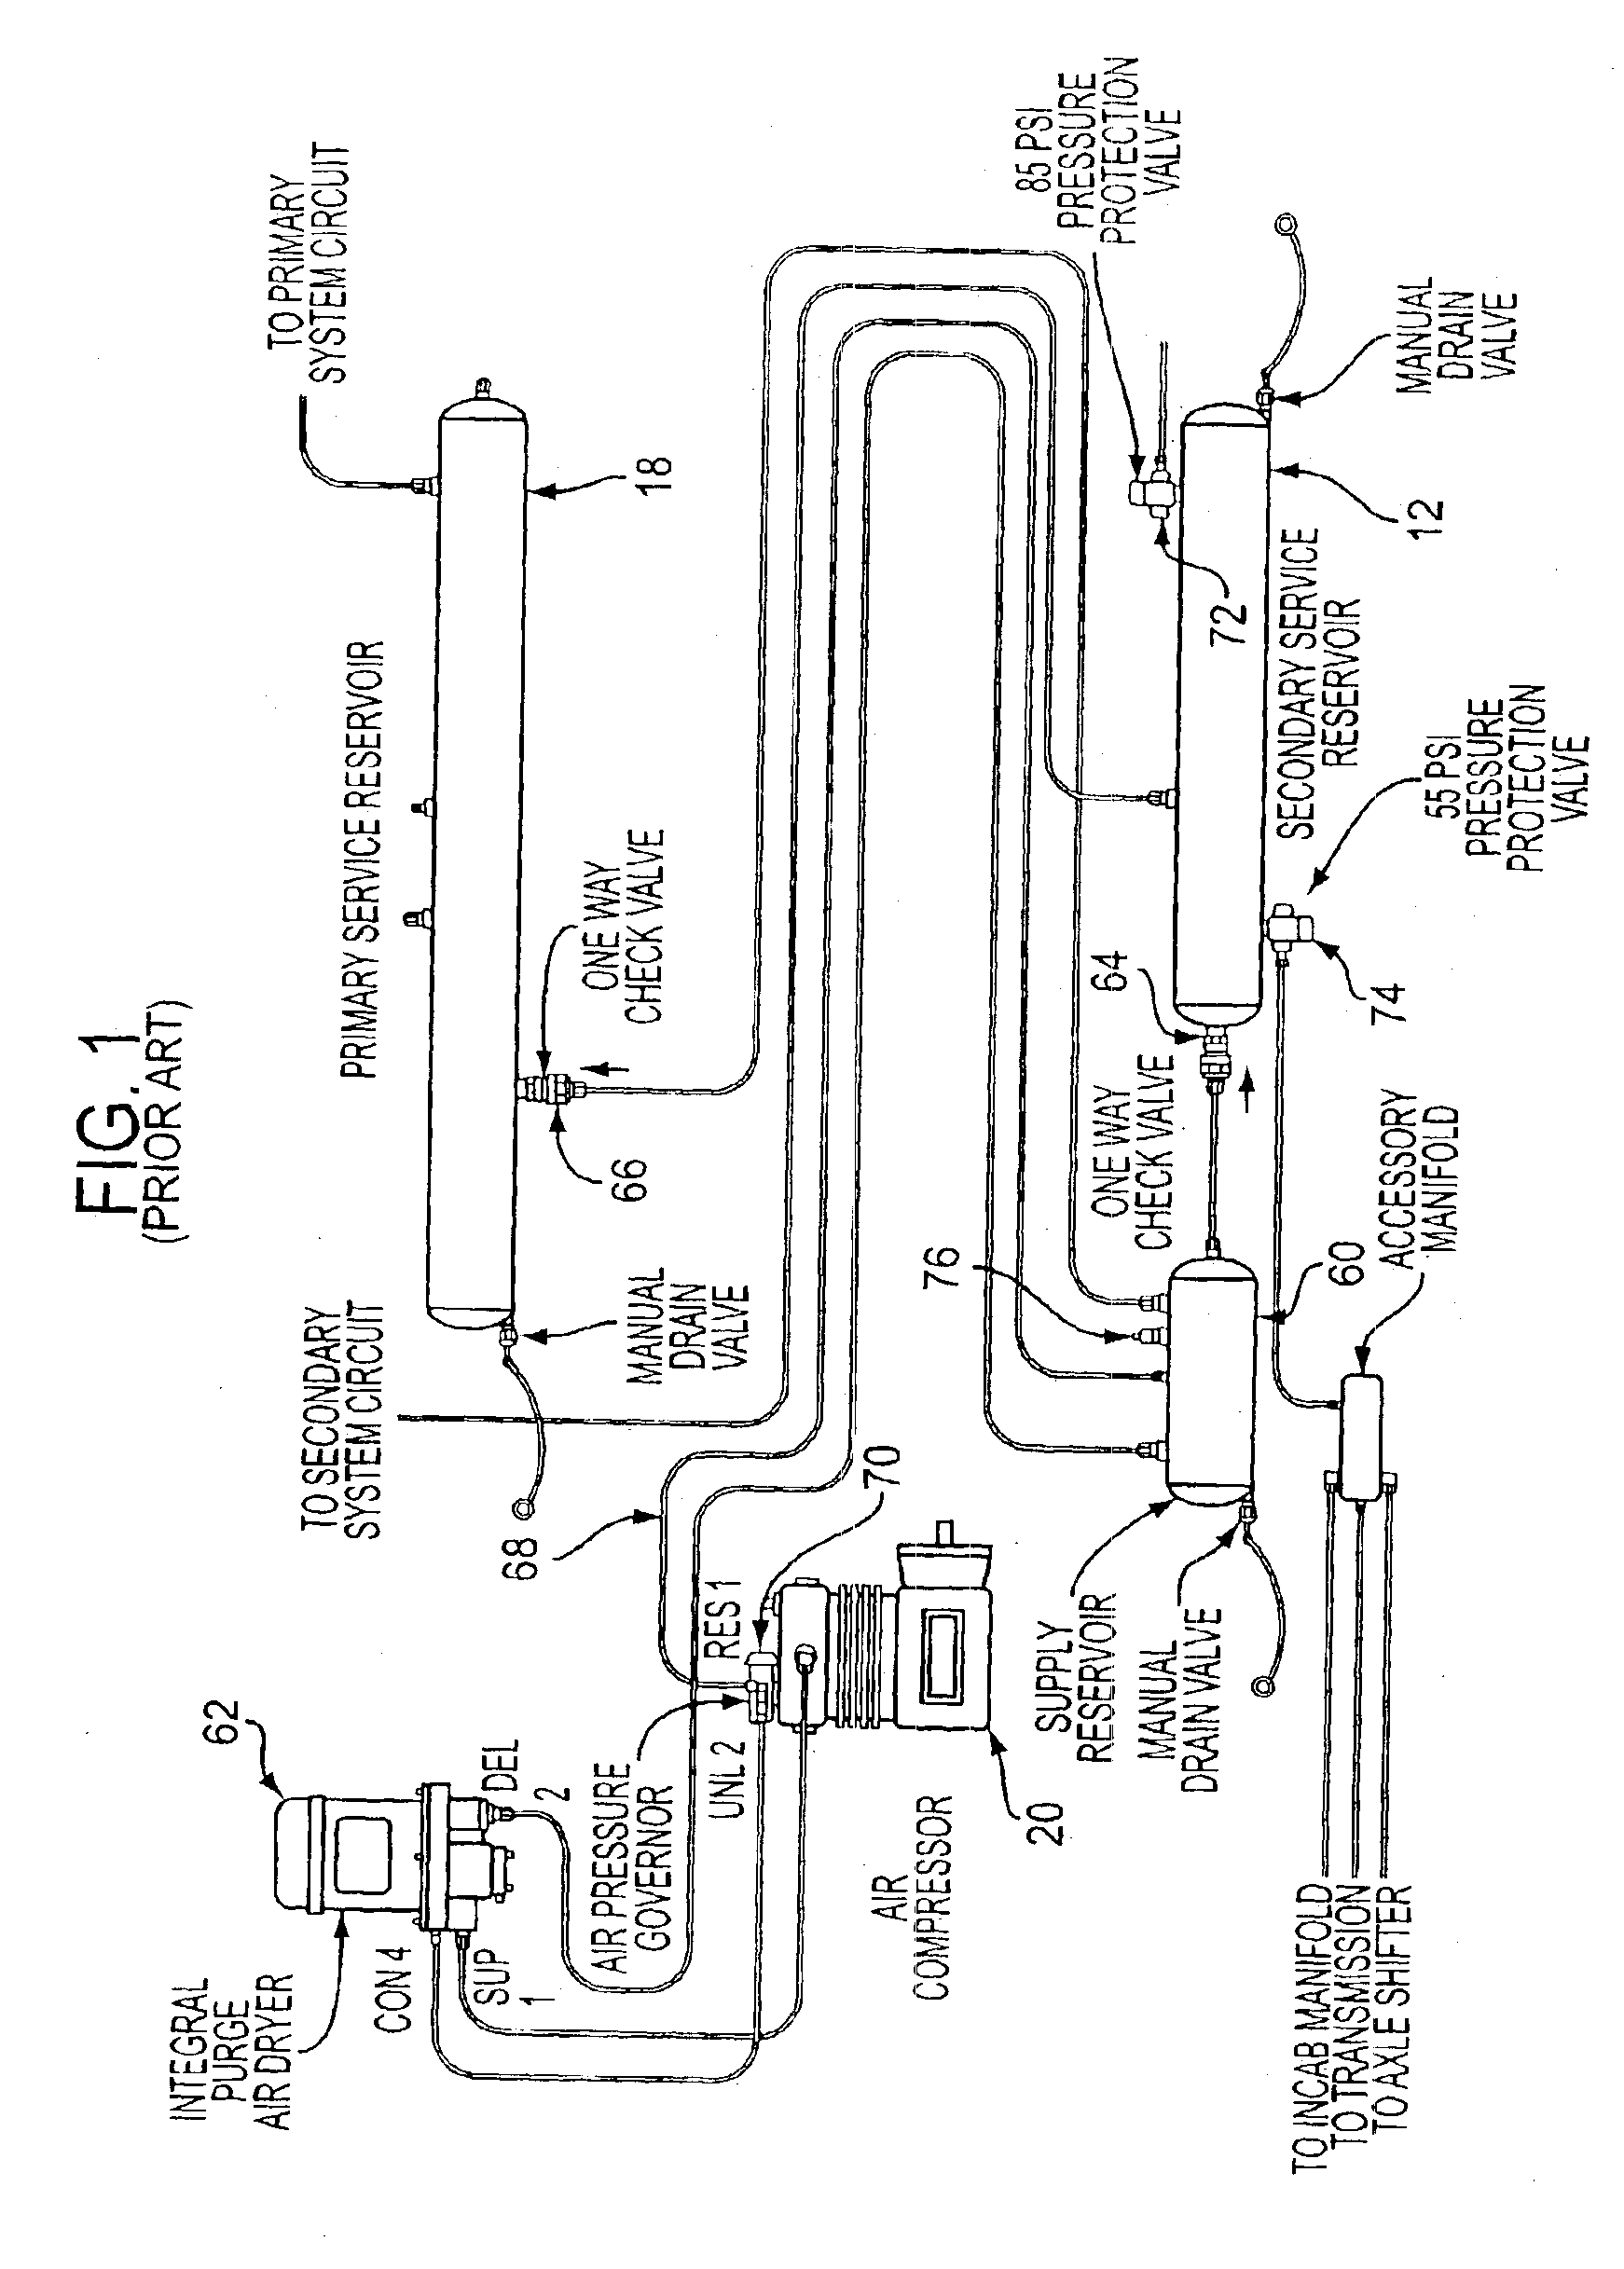 Air dryer module